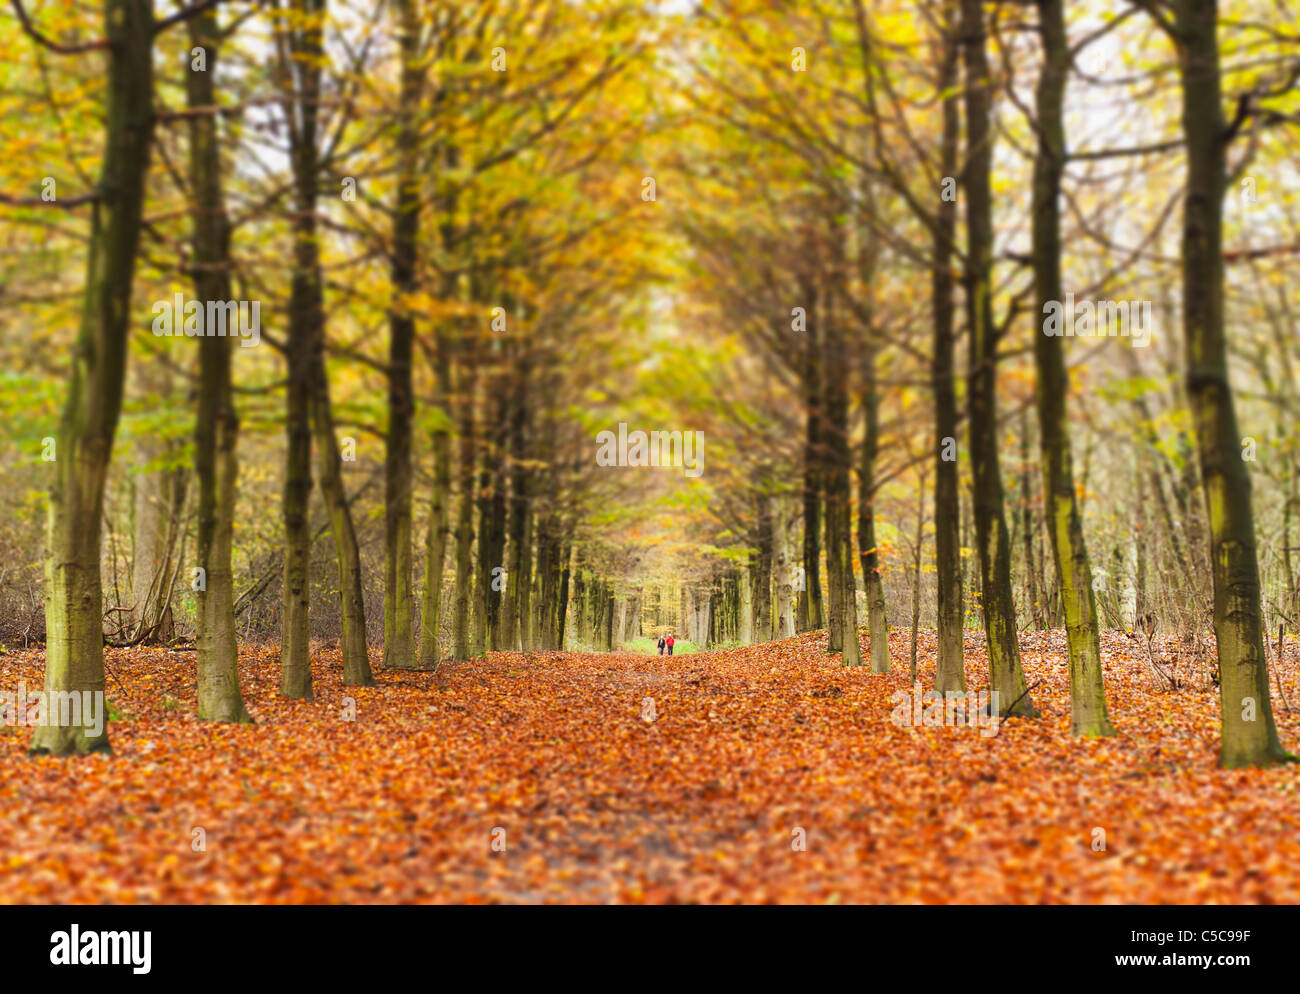 Allée d'arbres en automne ; Amsterdam, Pays-Bas Banque D'Images